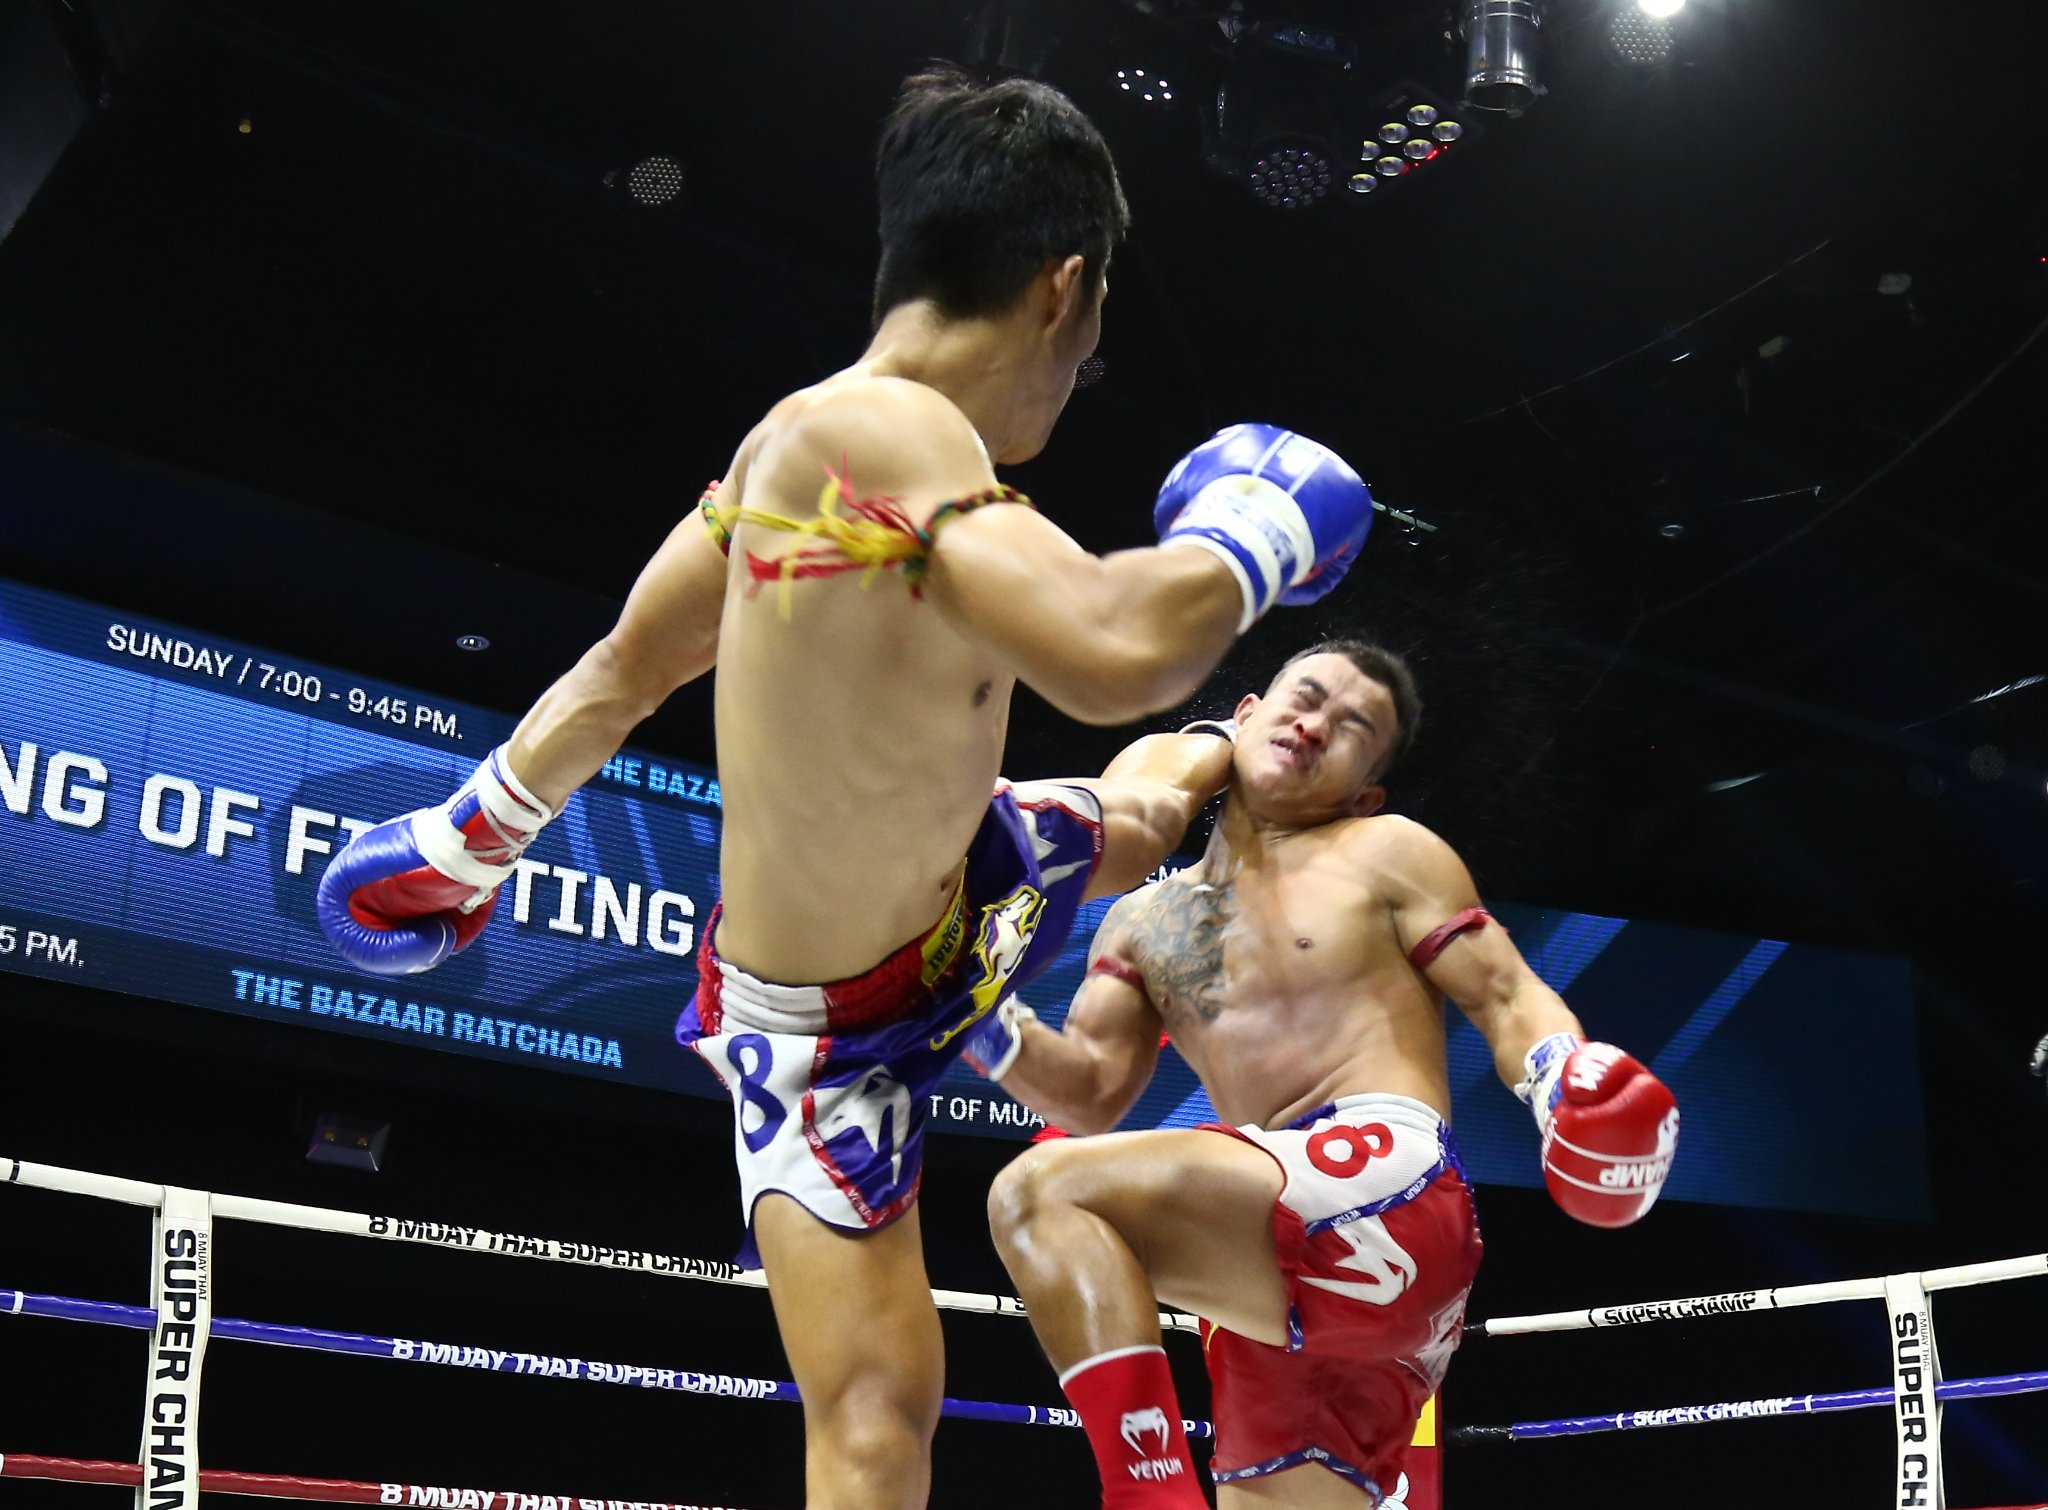 Trương Cao Minh Phát đấu 2 trận Muay trong 1 đêm ở Thái Lan, thắng KO cả 2 - Ảnh 1